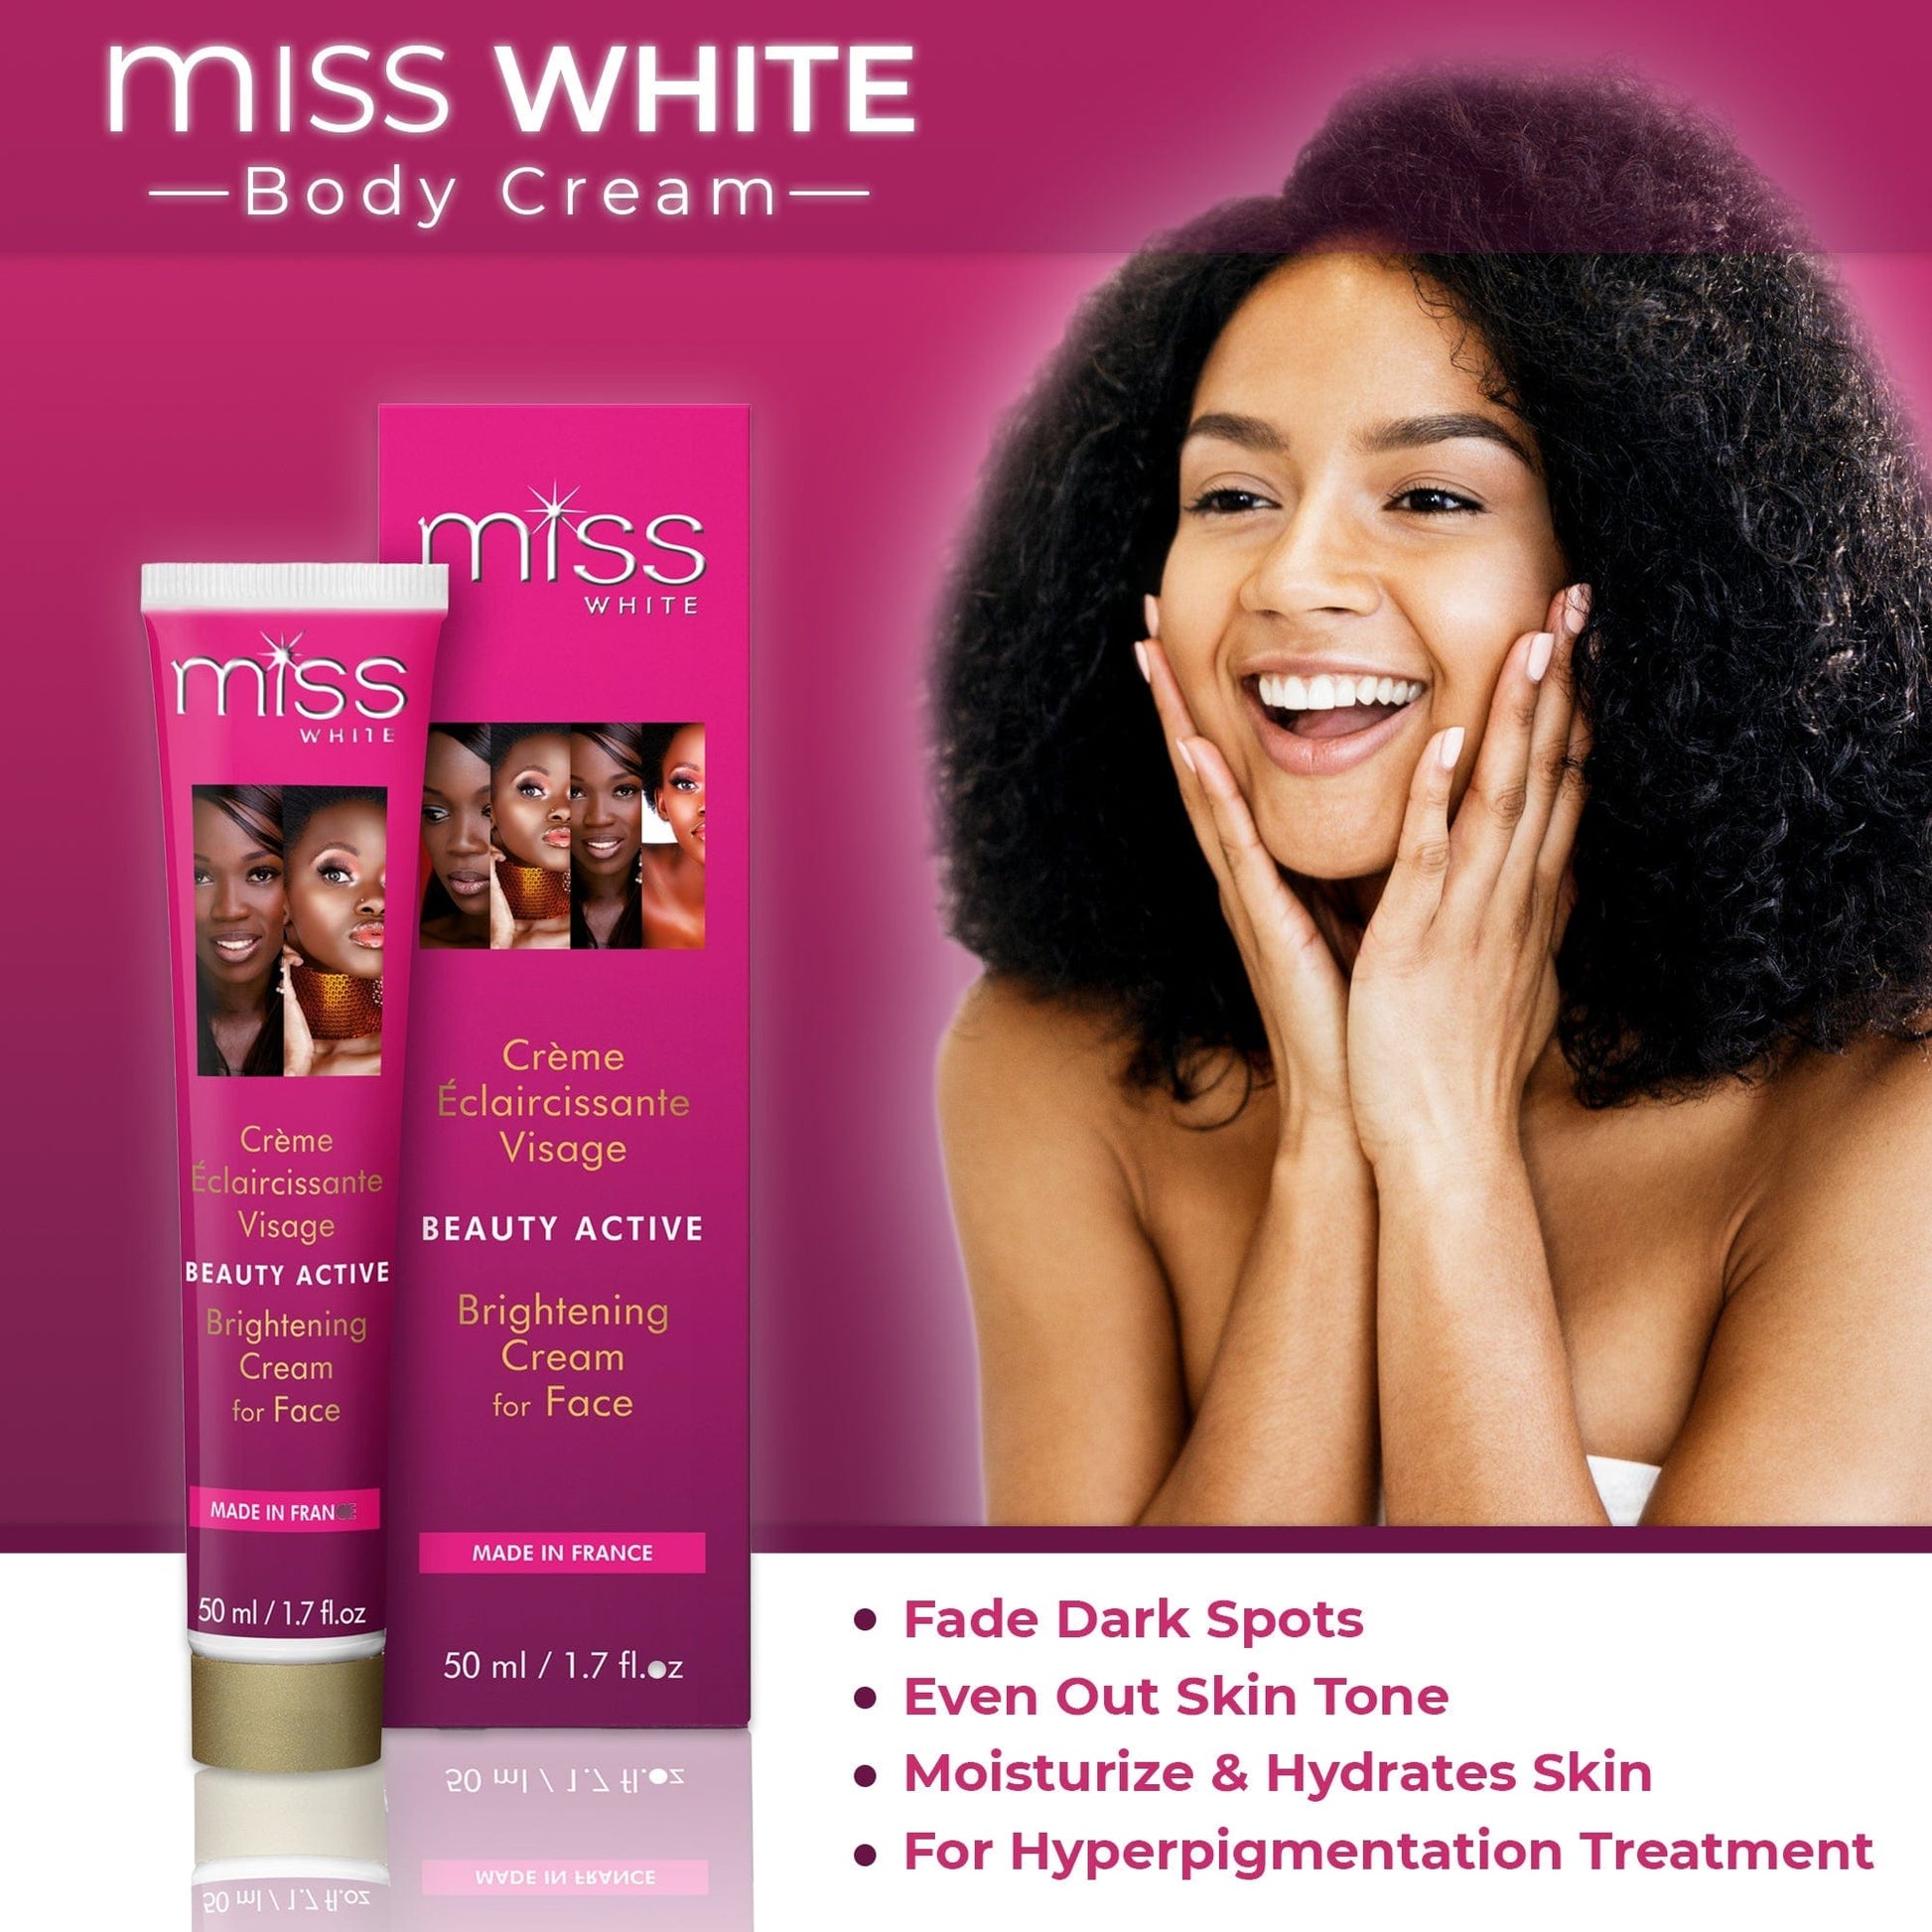 F&W Miss White Beauty Crema schiarente 50ml NHQ Mitchell Brands - Mitchell Brands - Schiaritura della pelle, schiaritura della pelle, attenuazione delle macchie scure, burro di karité, prodotti per la crescita dei capelli